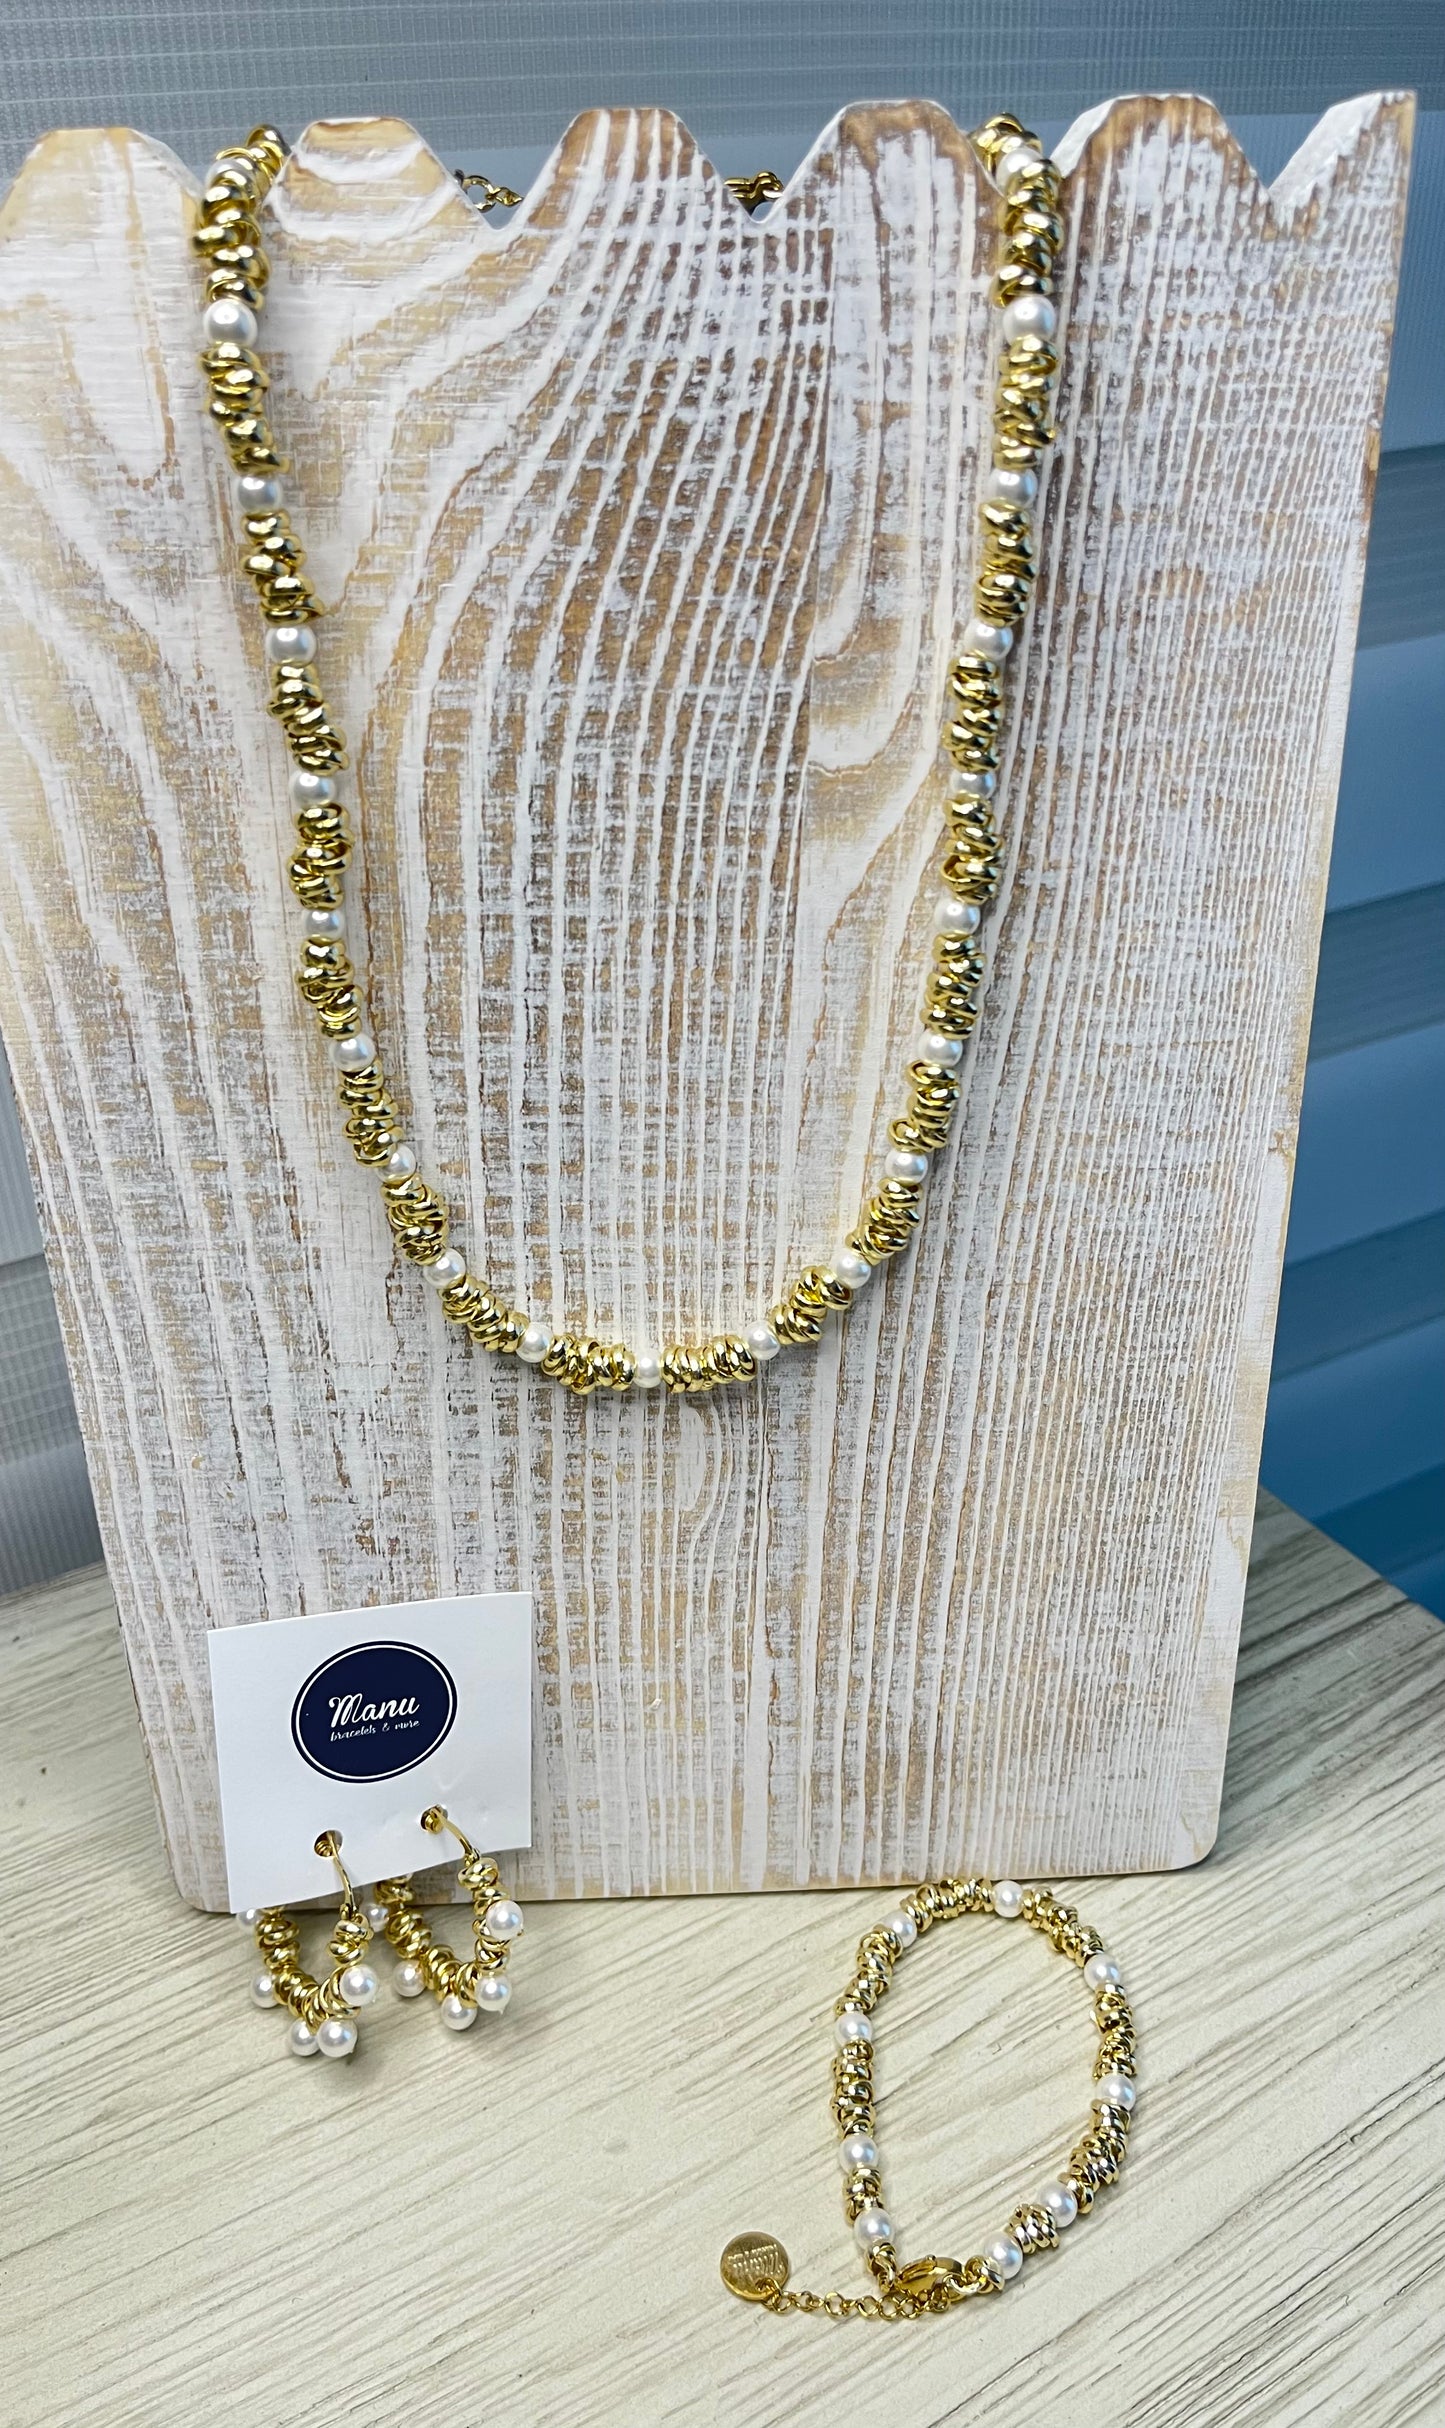 Manu- Colección argolla y perlas oro